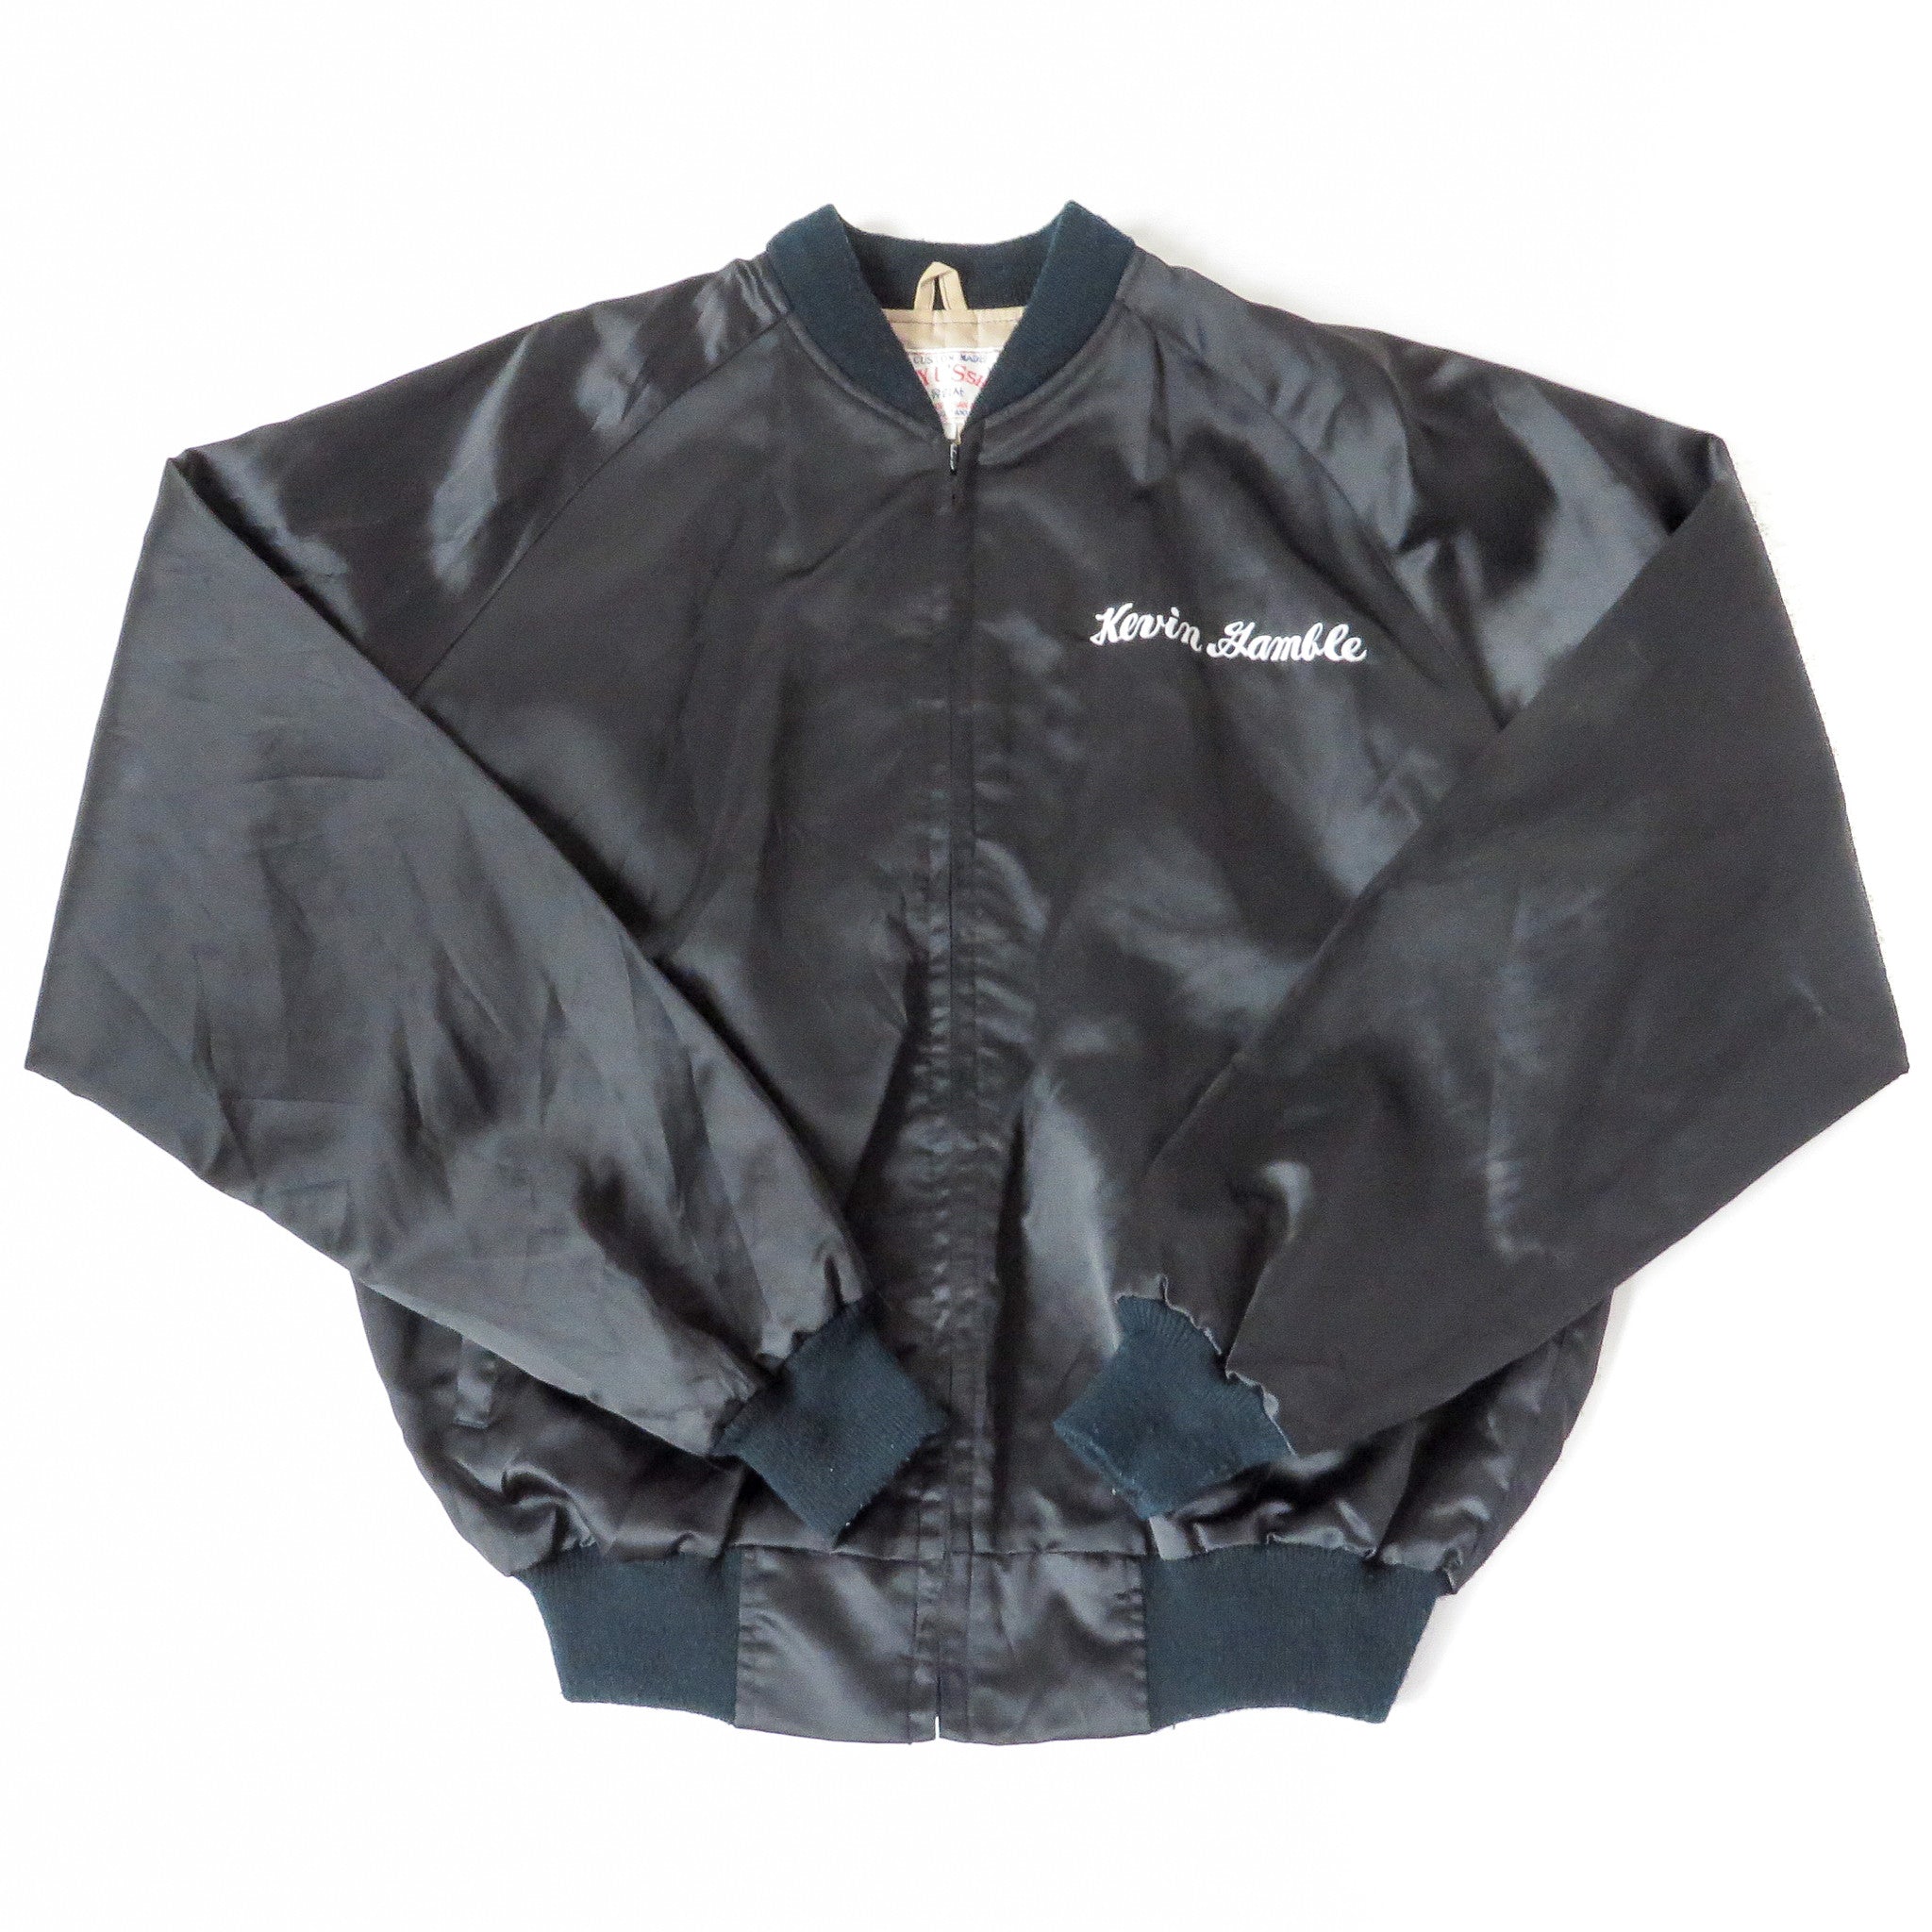 Vintage 1988 Seoul Korea Olympics Jacket Sz XL